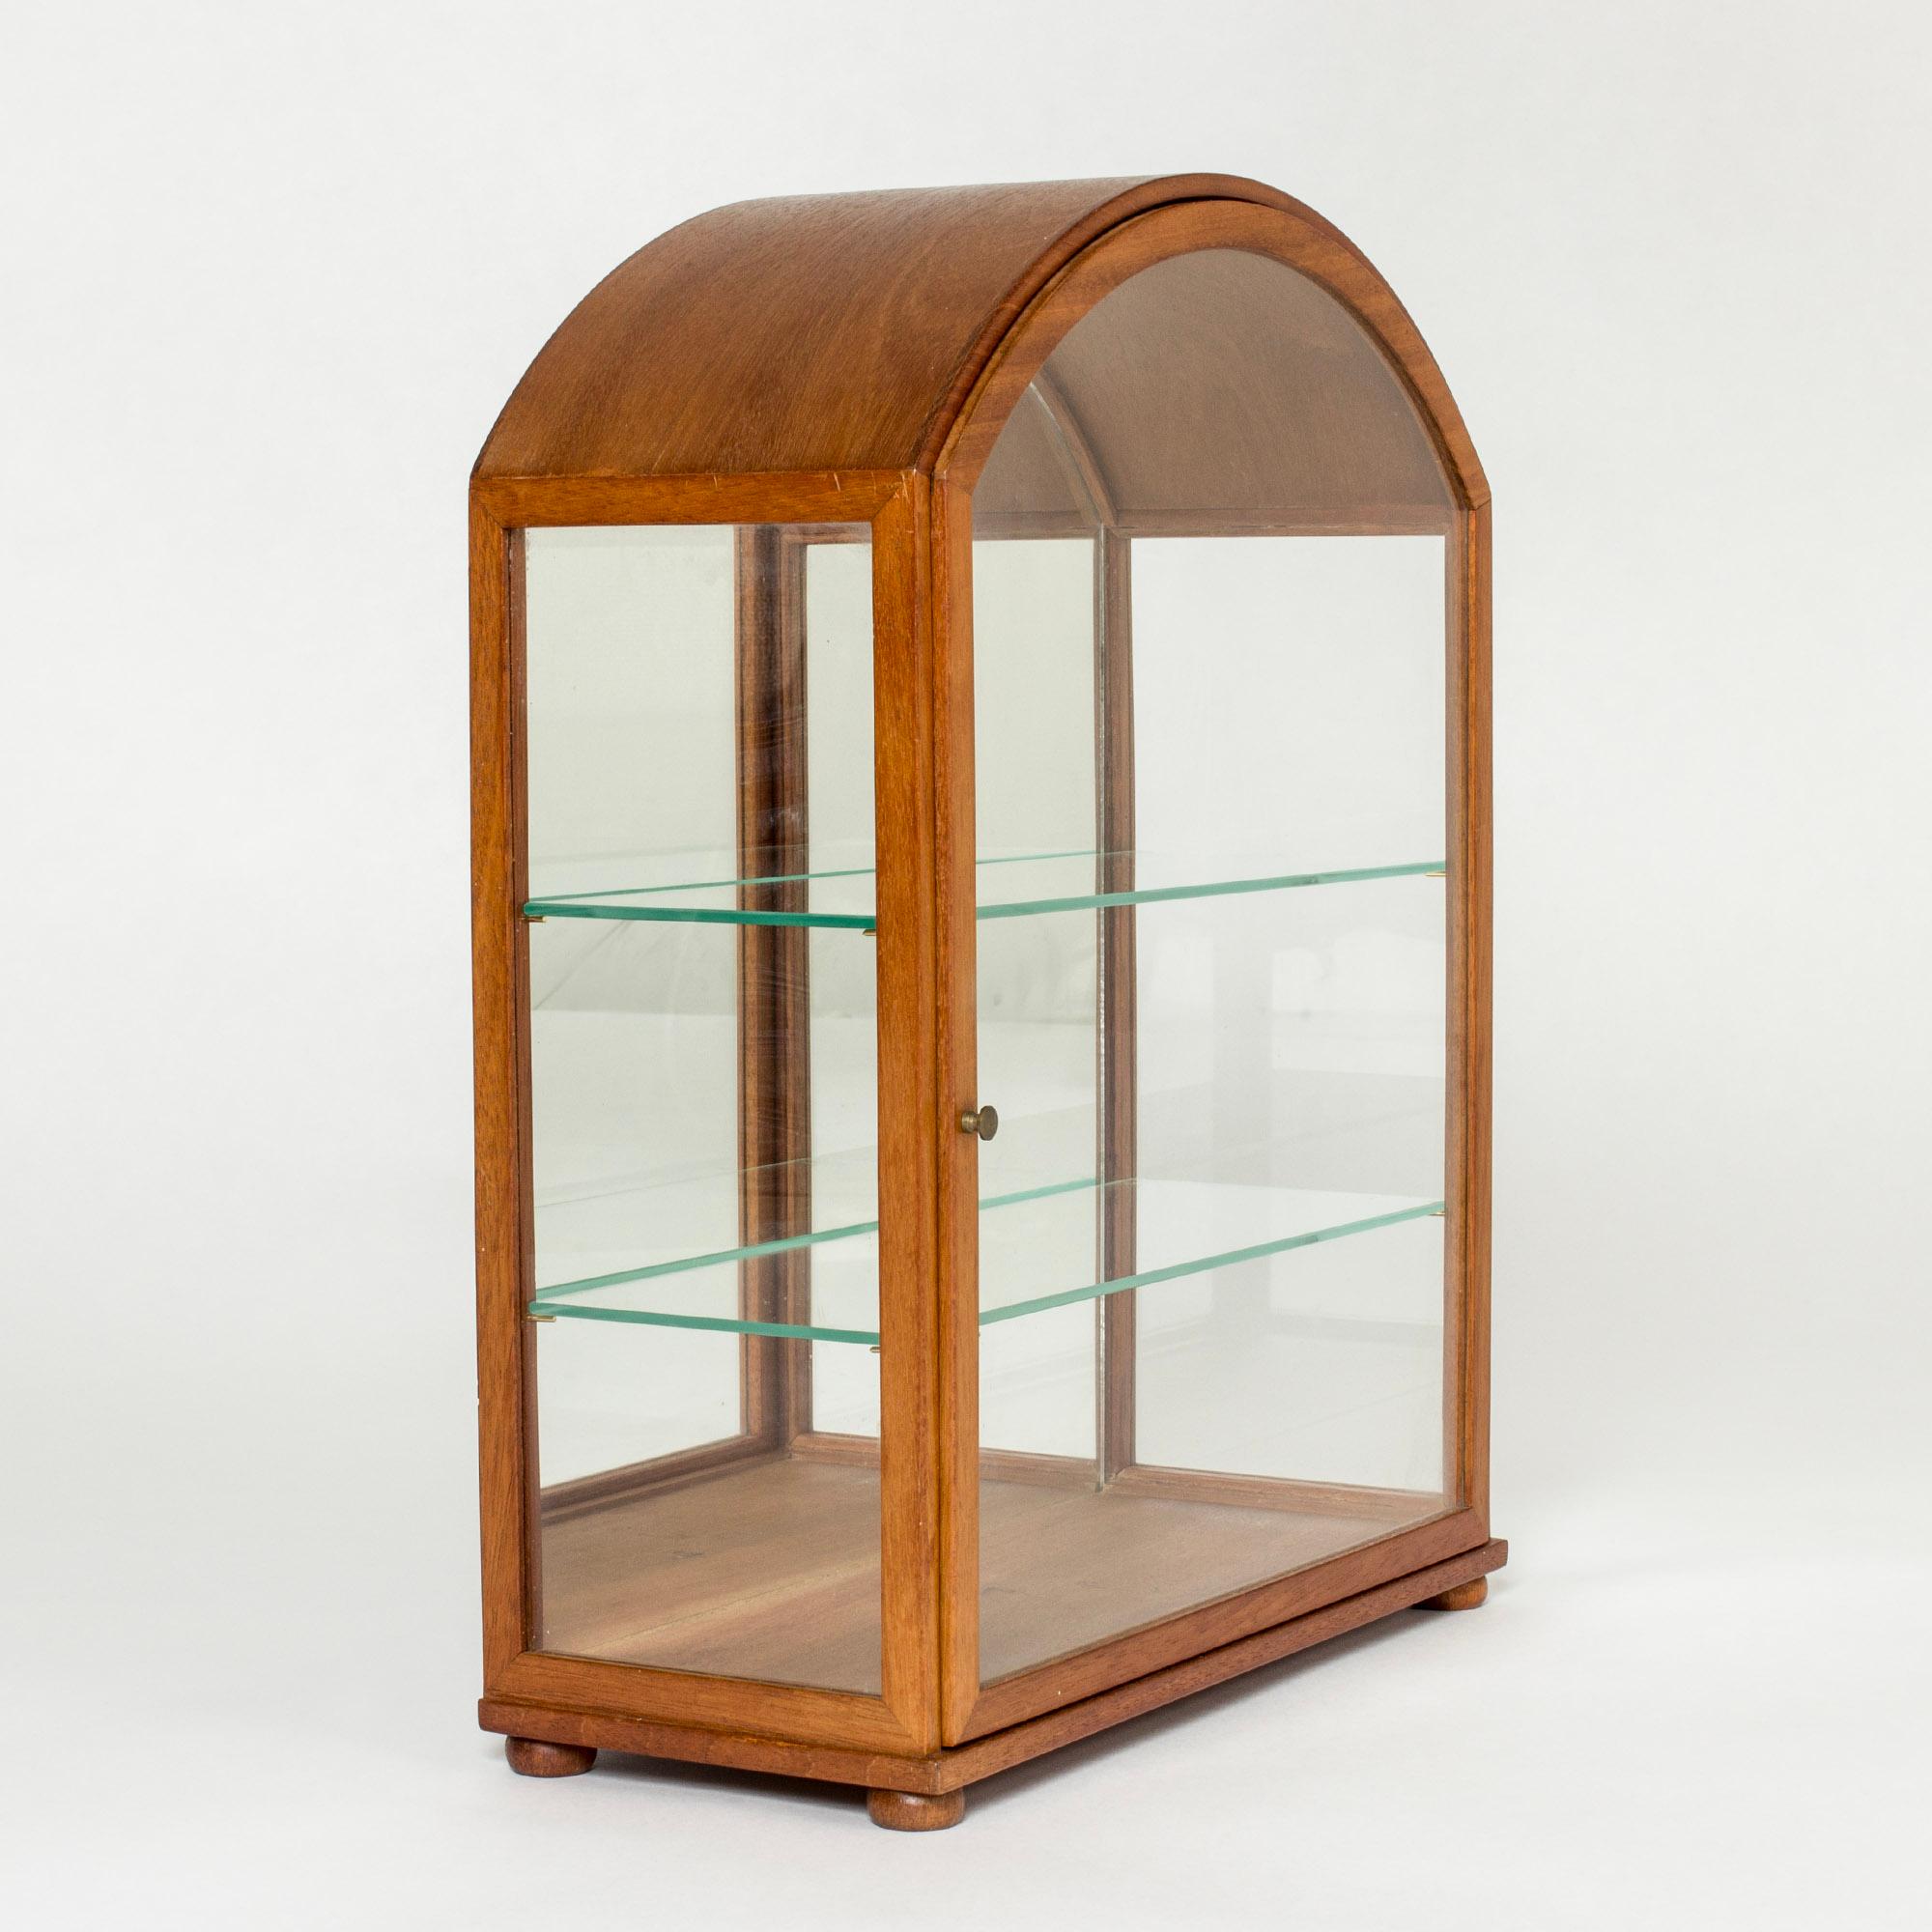 Magnifique vitrine de table de Josef Franks, réalisée en acajou dans un design épuré. Les étagères en verre et le fond en miroir permettent à la lumière de circuler librement. Parfait pour présenter des objets précieux.